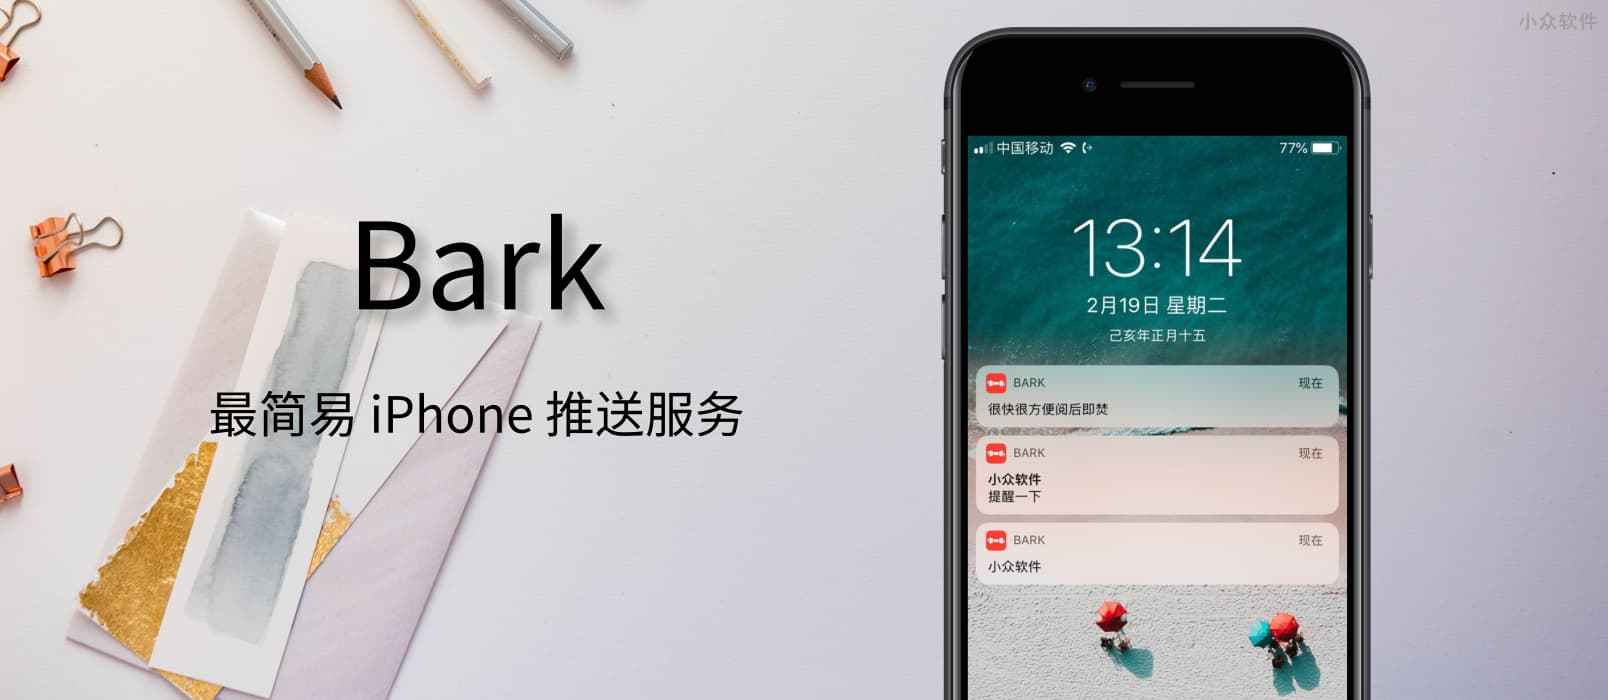 Bark - 自己给自己的 iPhone 发推送提醒 - 最简单的推送提醒服务，开源免费 1